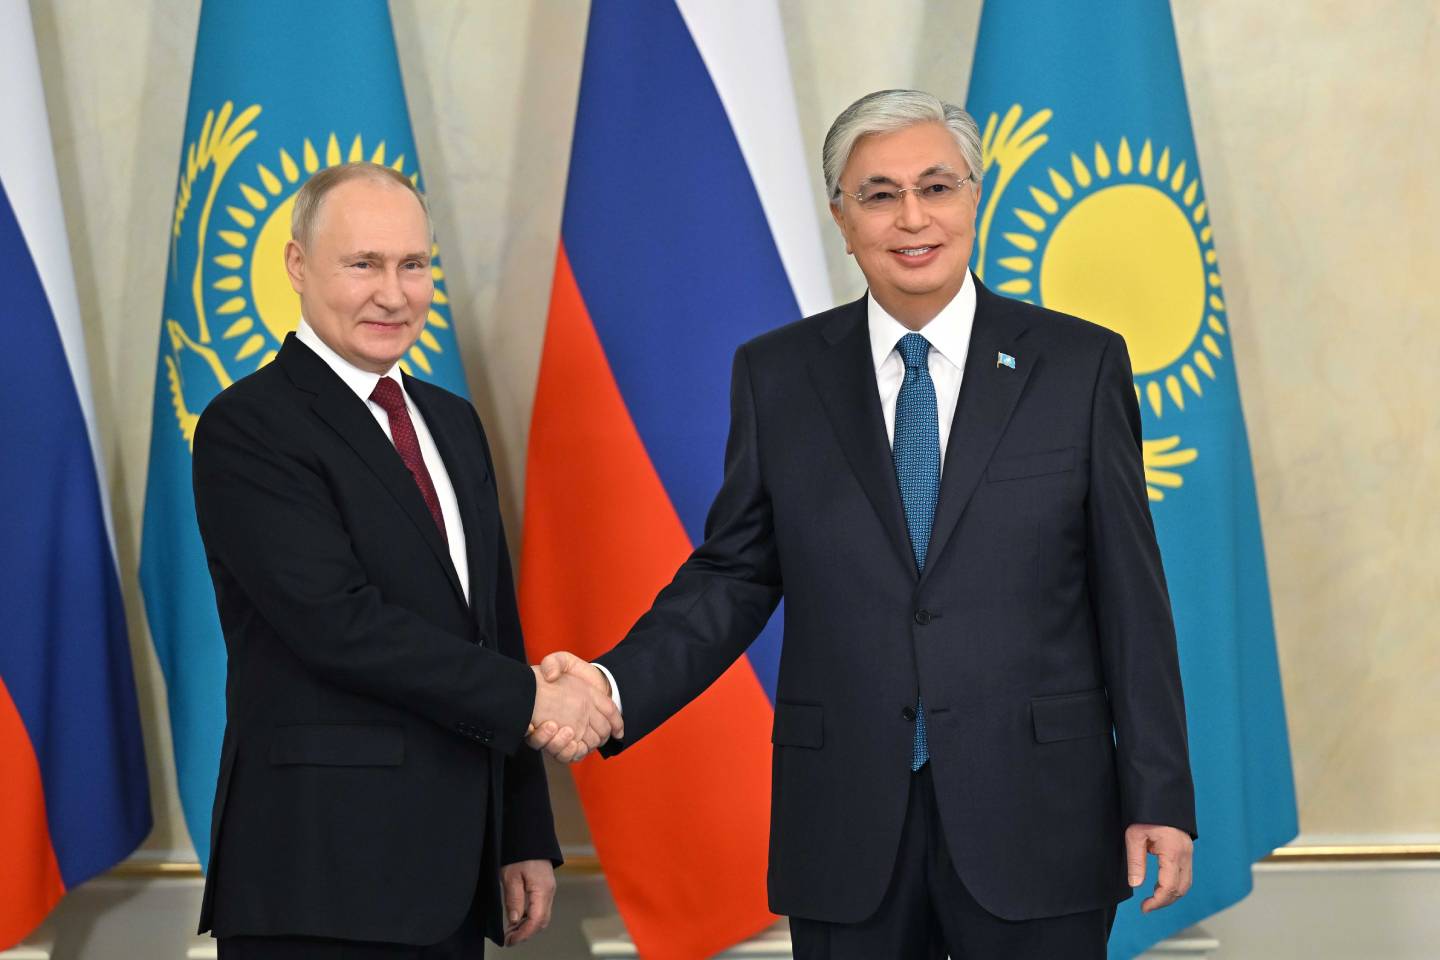 Новости мира / Политика в мире / Президенты России и Казахстана подпишут ряд важных документов